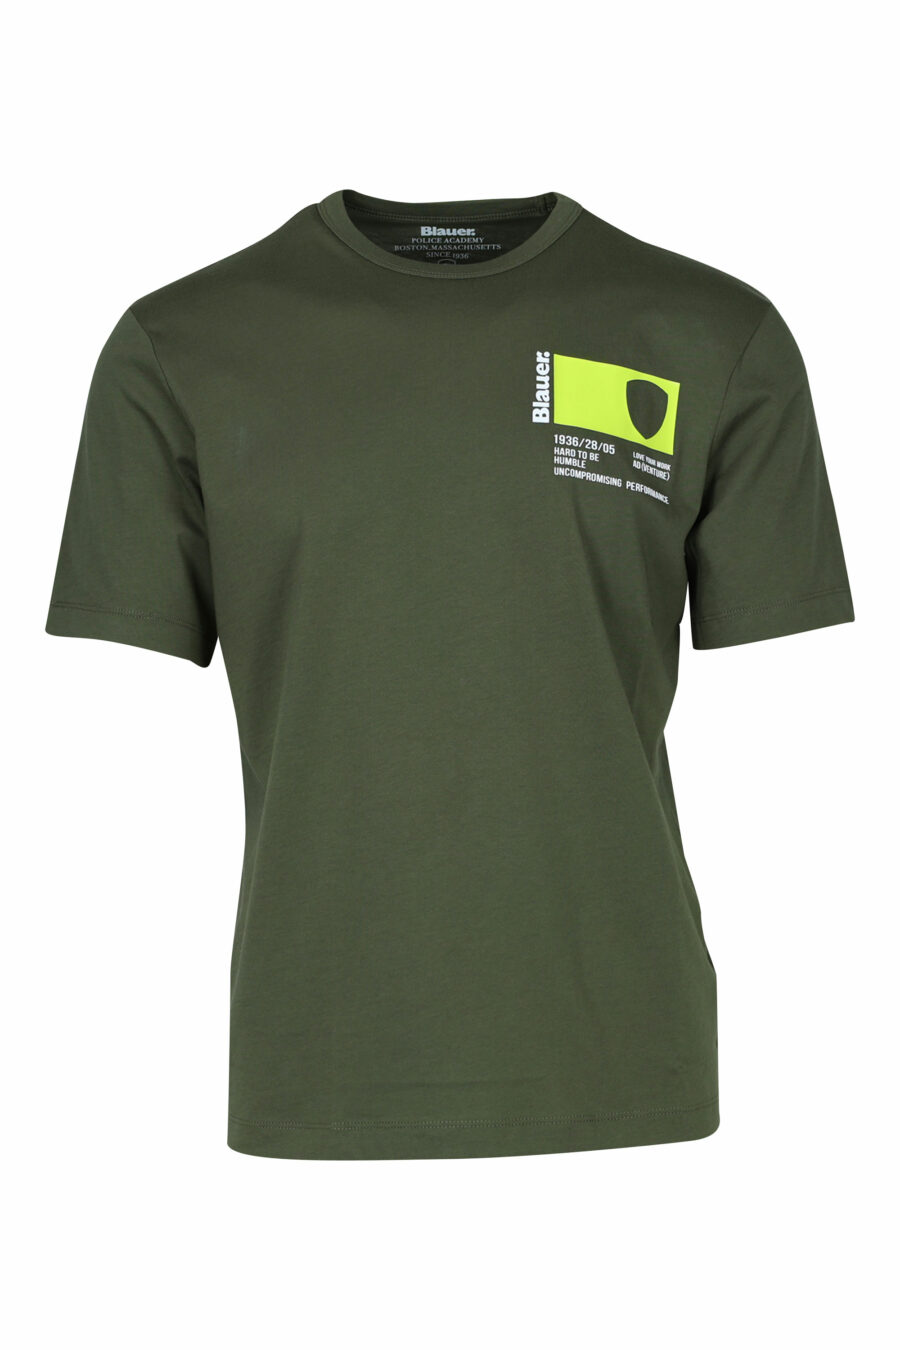 T-shirt vert militaire avec pochette imprimée mini logo - 8058610799816